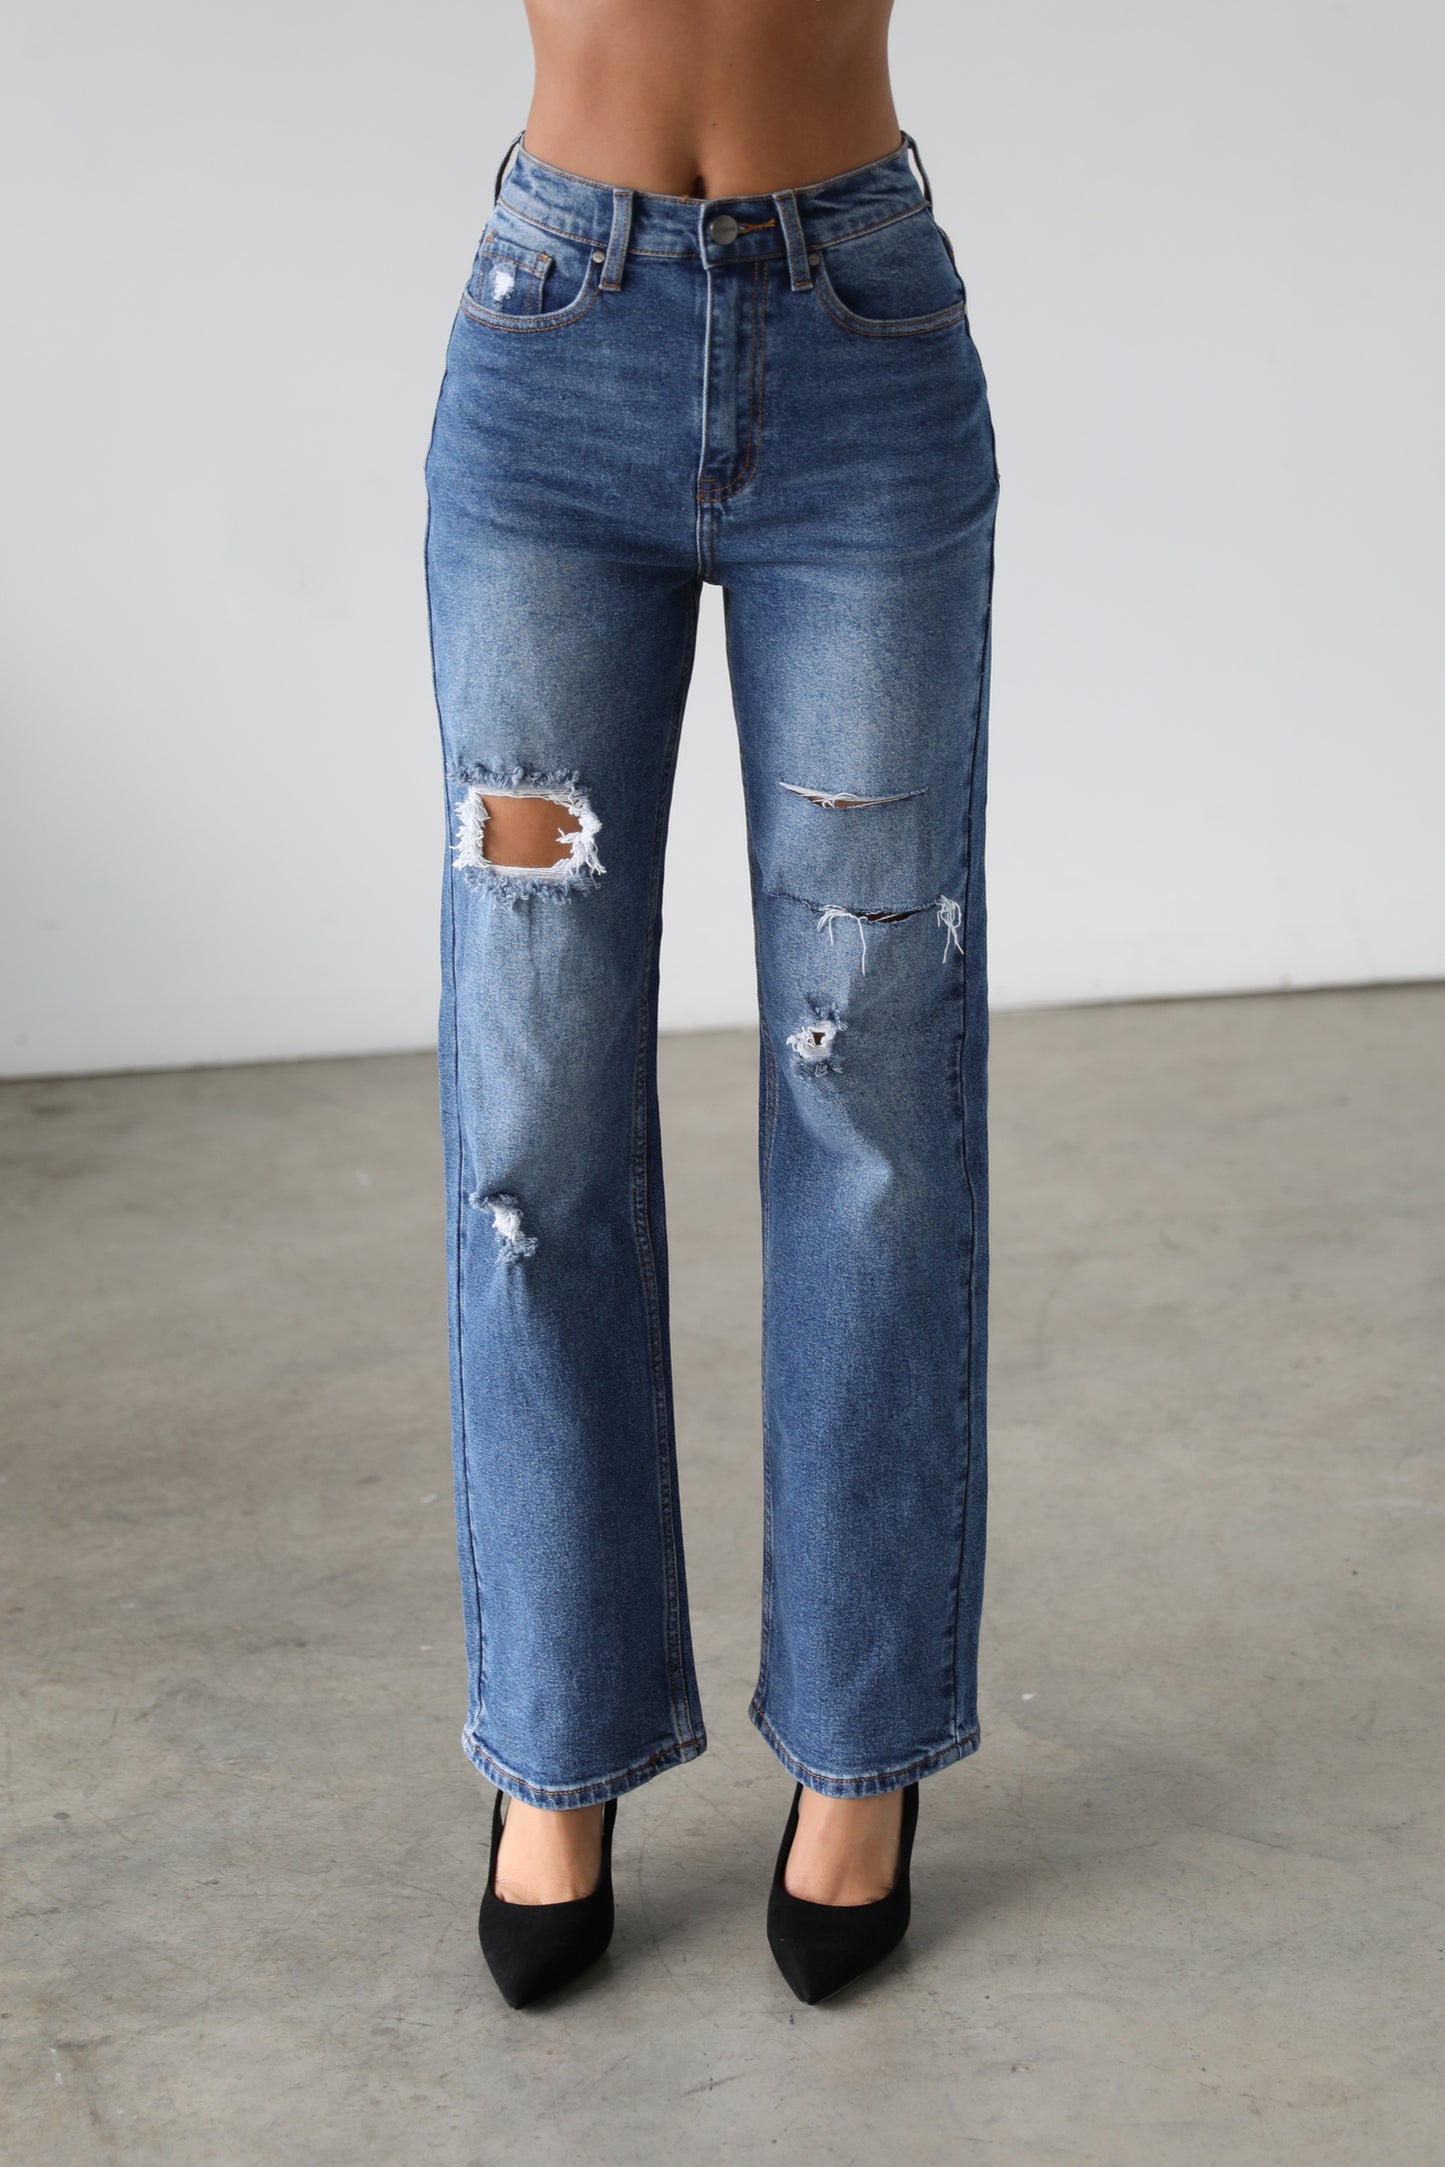 DOGMA DENIM - High Rise Straight Leg Denim Jeans - Dark- 7106